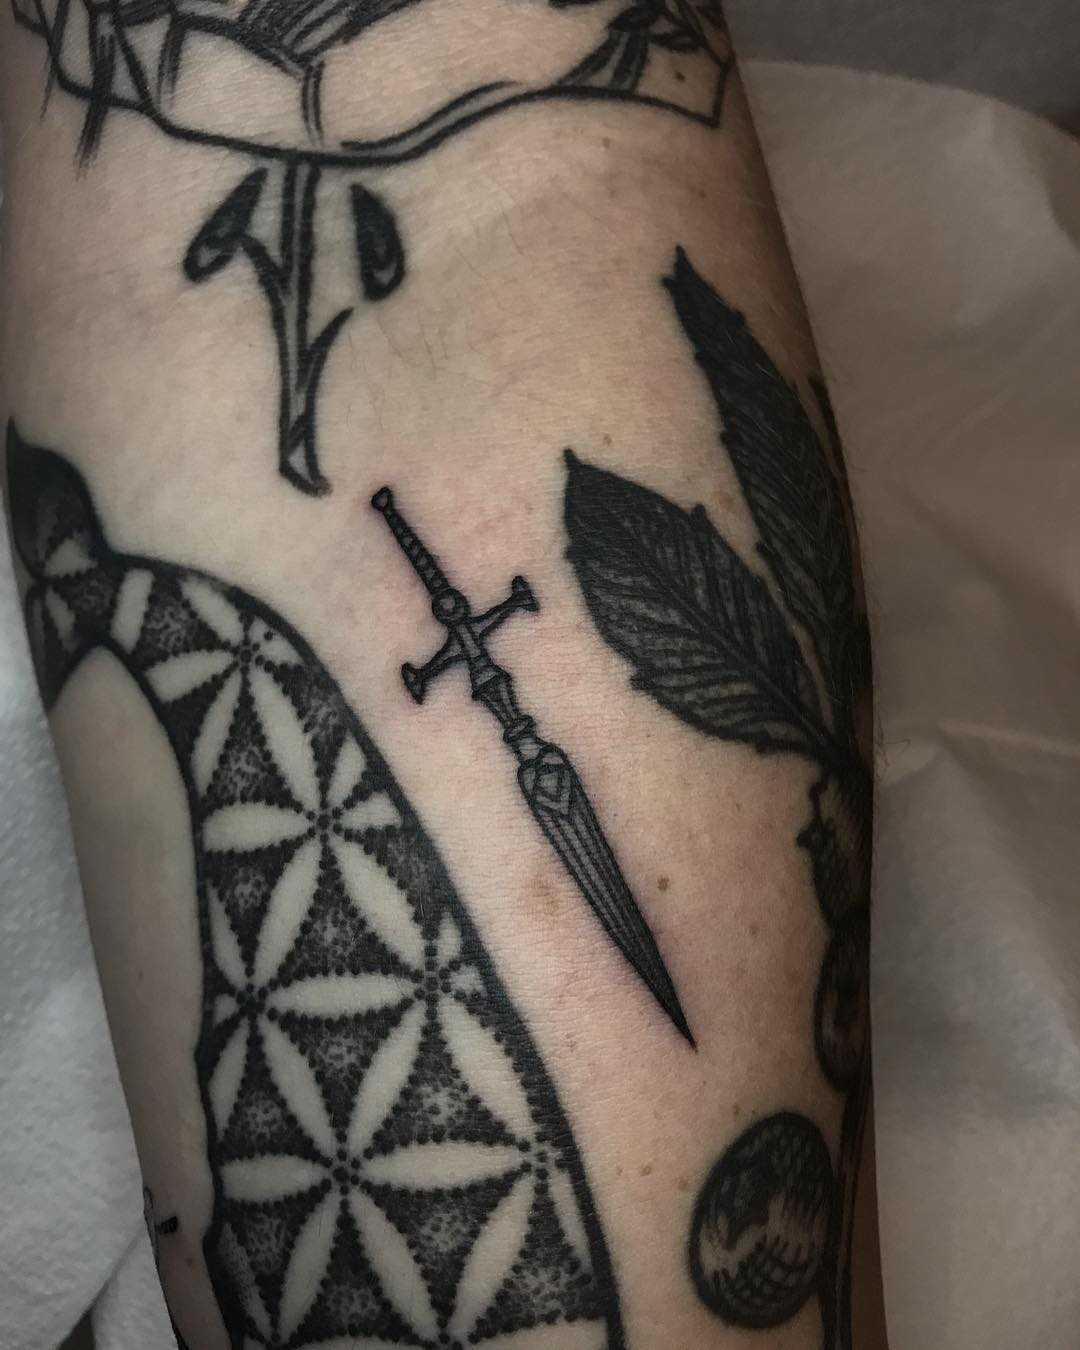 Micro dagger tattoo by Tine DeFiore